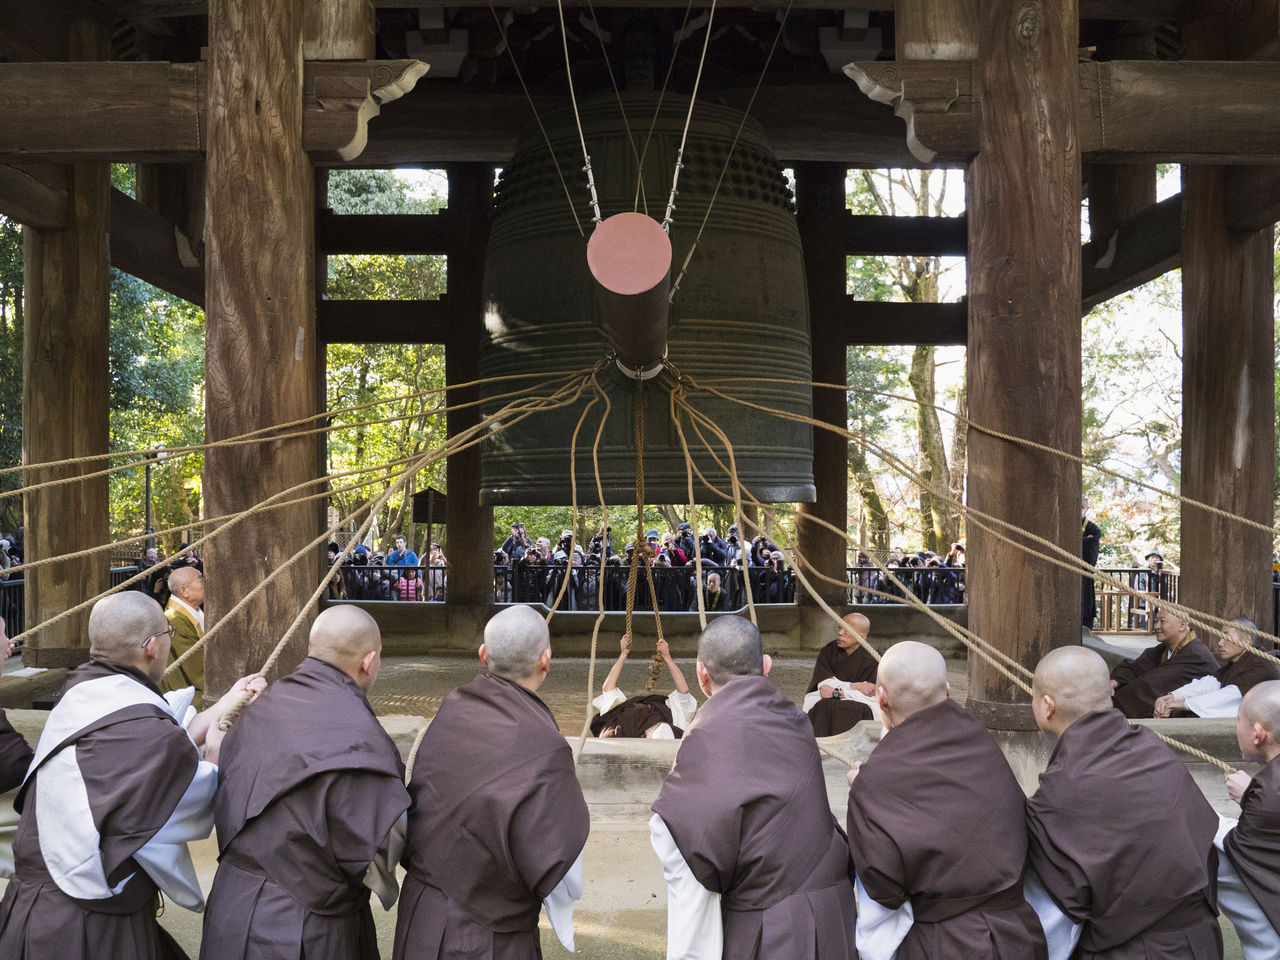 La campana es tocada vigorosamente por un monje que sujeta la cuerda principal y 16 monjes que sostienen las secundarias.